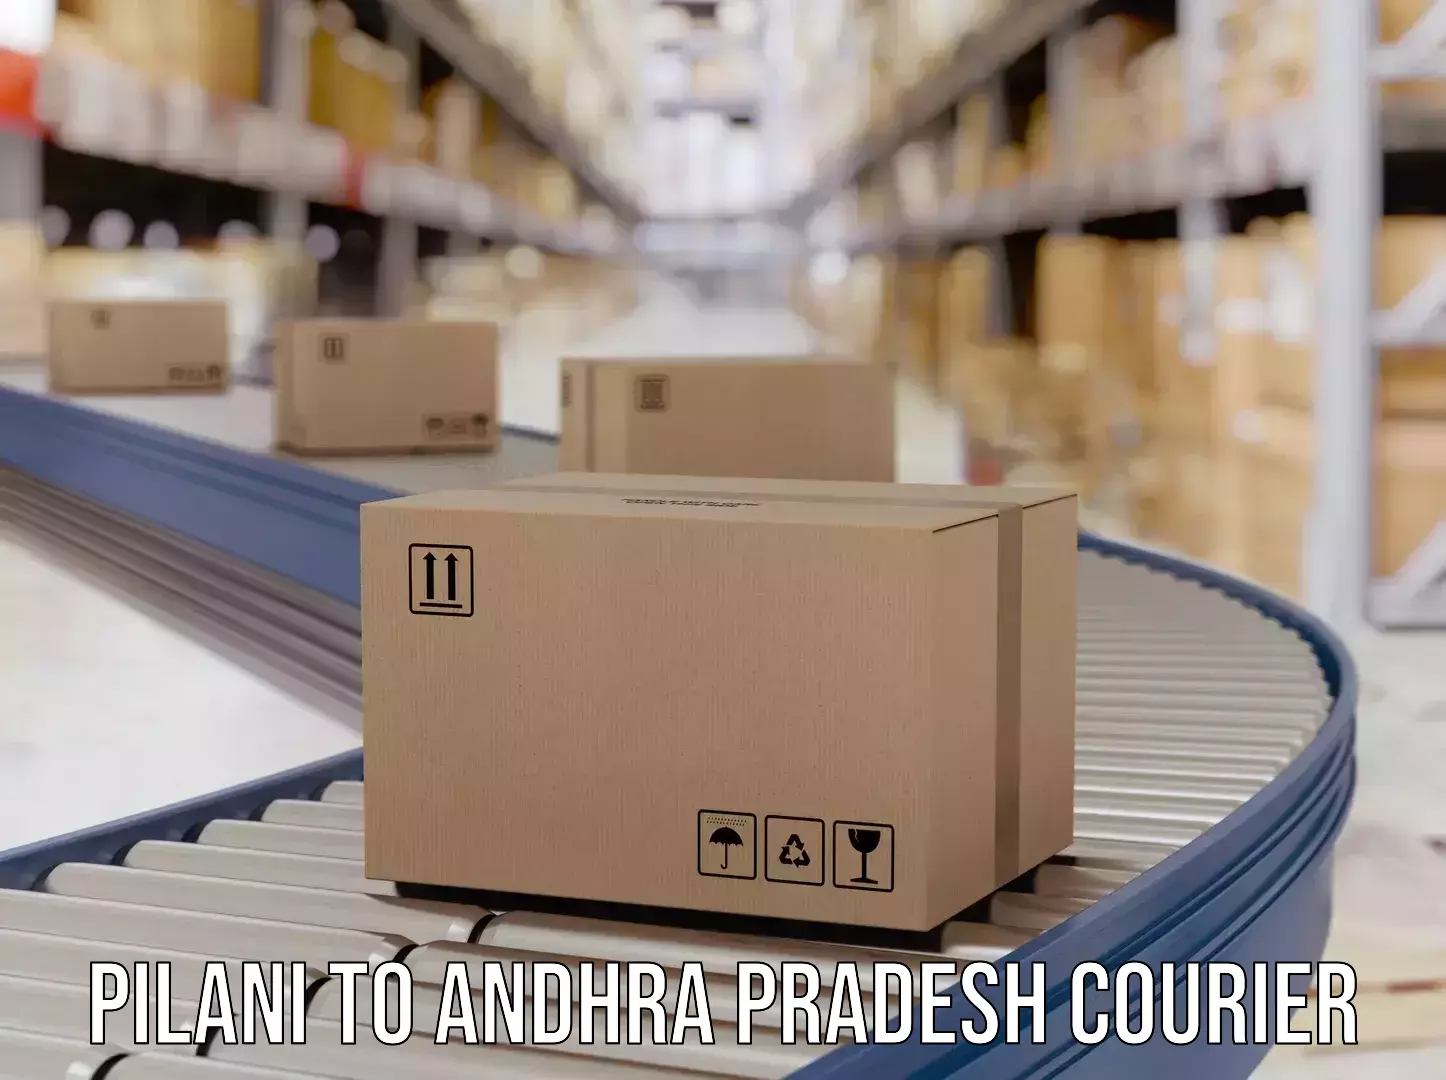 24-hour courier services Pilani to Andhra Pradesh